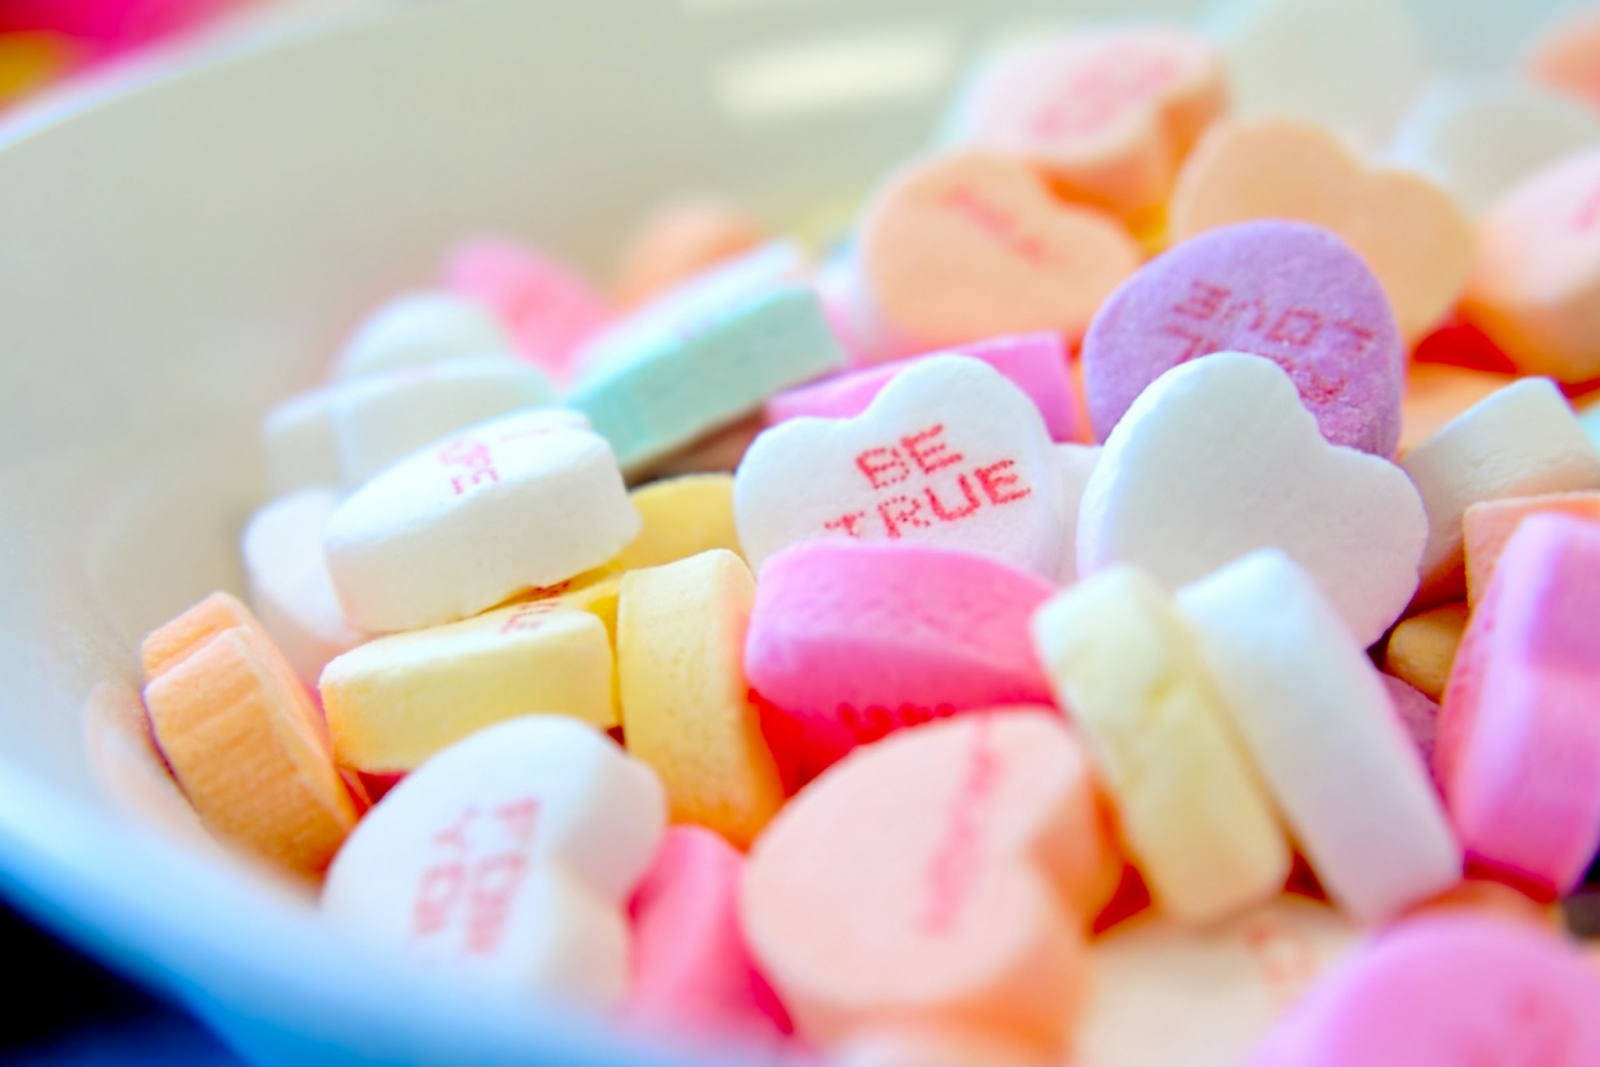 Heel veel gekleurde suikerhartjes met teksten als Be True, For you, Love en Kiss.